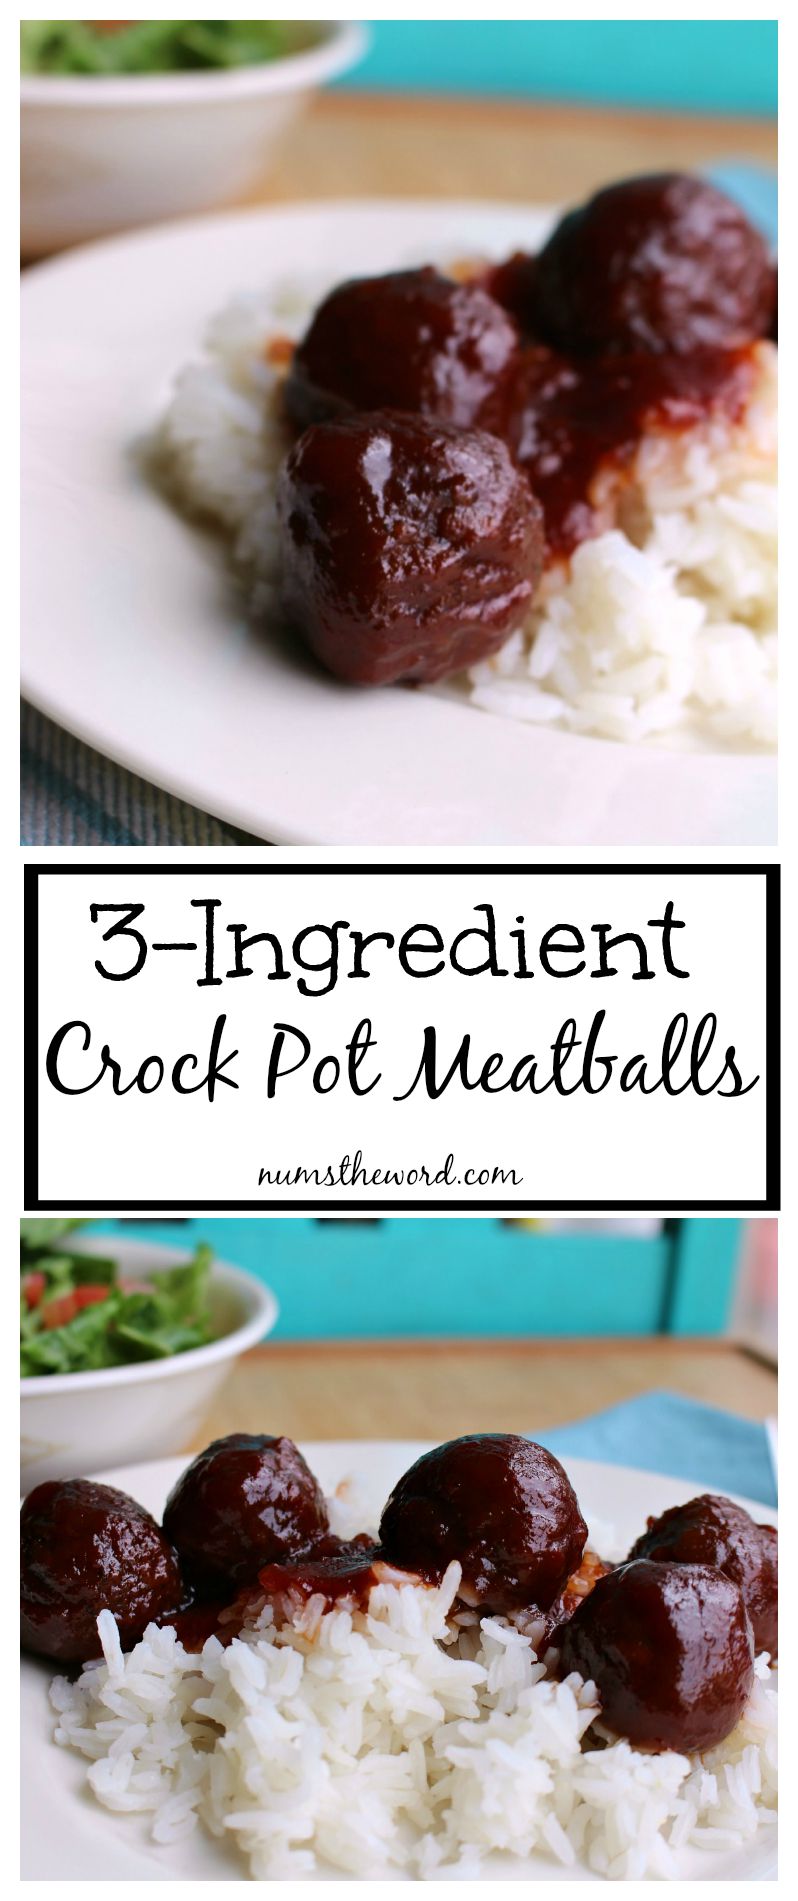 3-Ingredient Crock Pot Meatballs